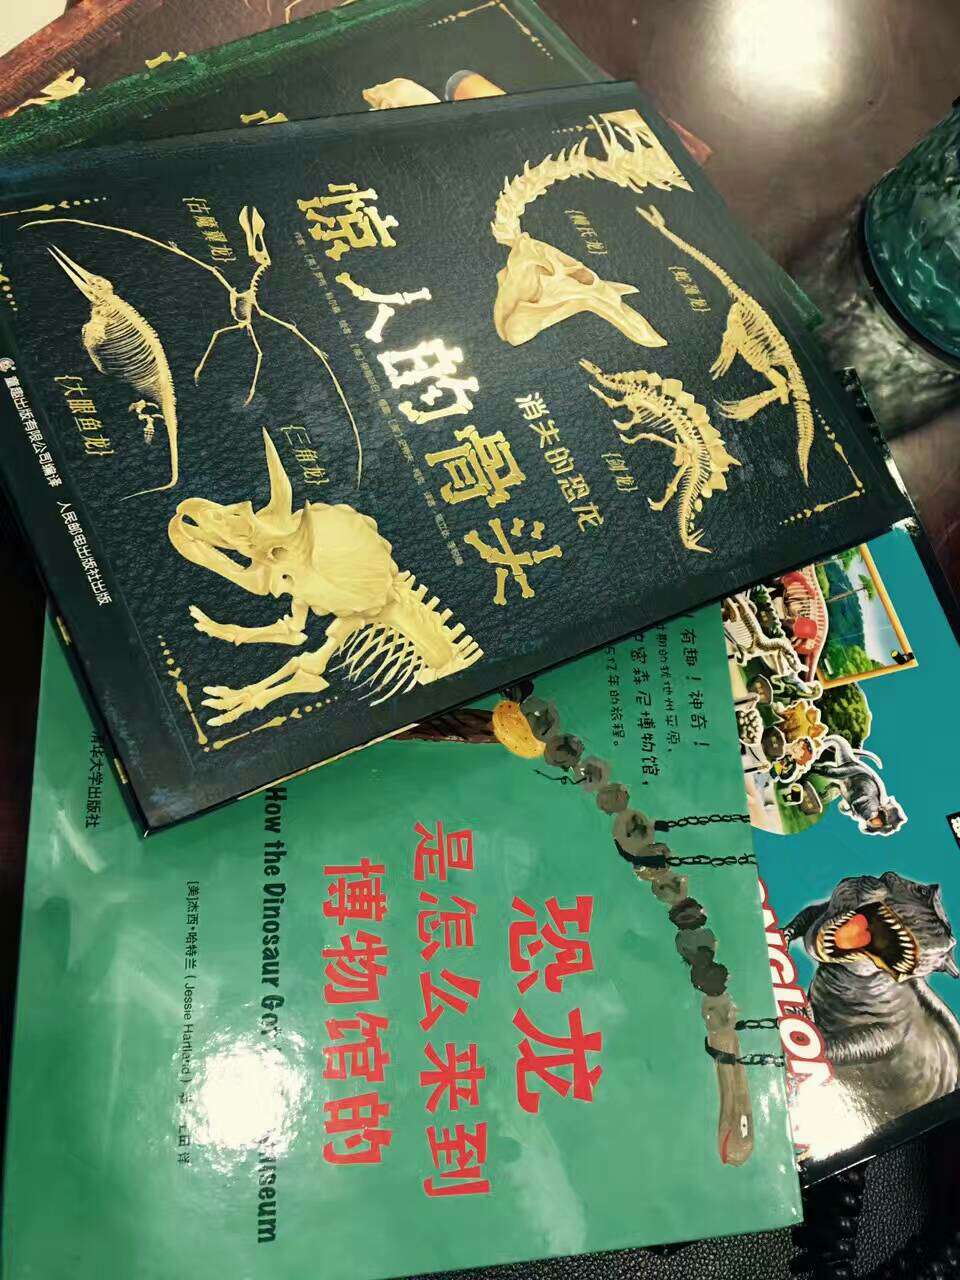 小朋友去了博物馆，对恐龙骨颇有兴趣，买几本书增知识，一起学习学习